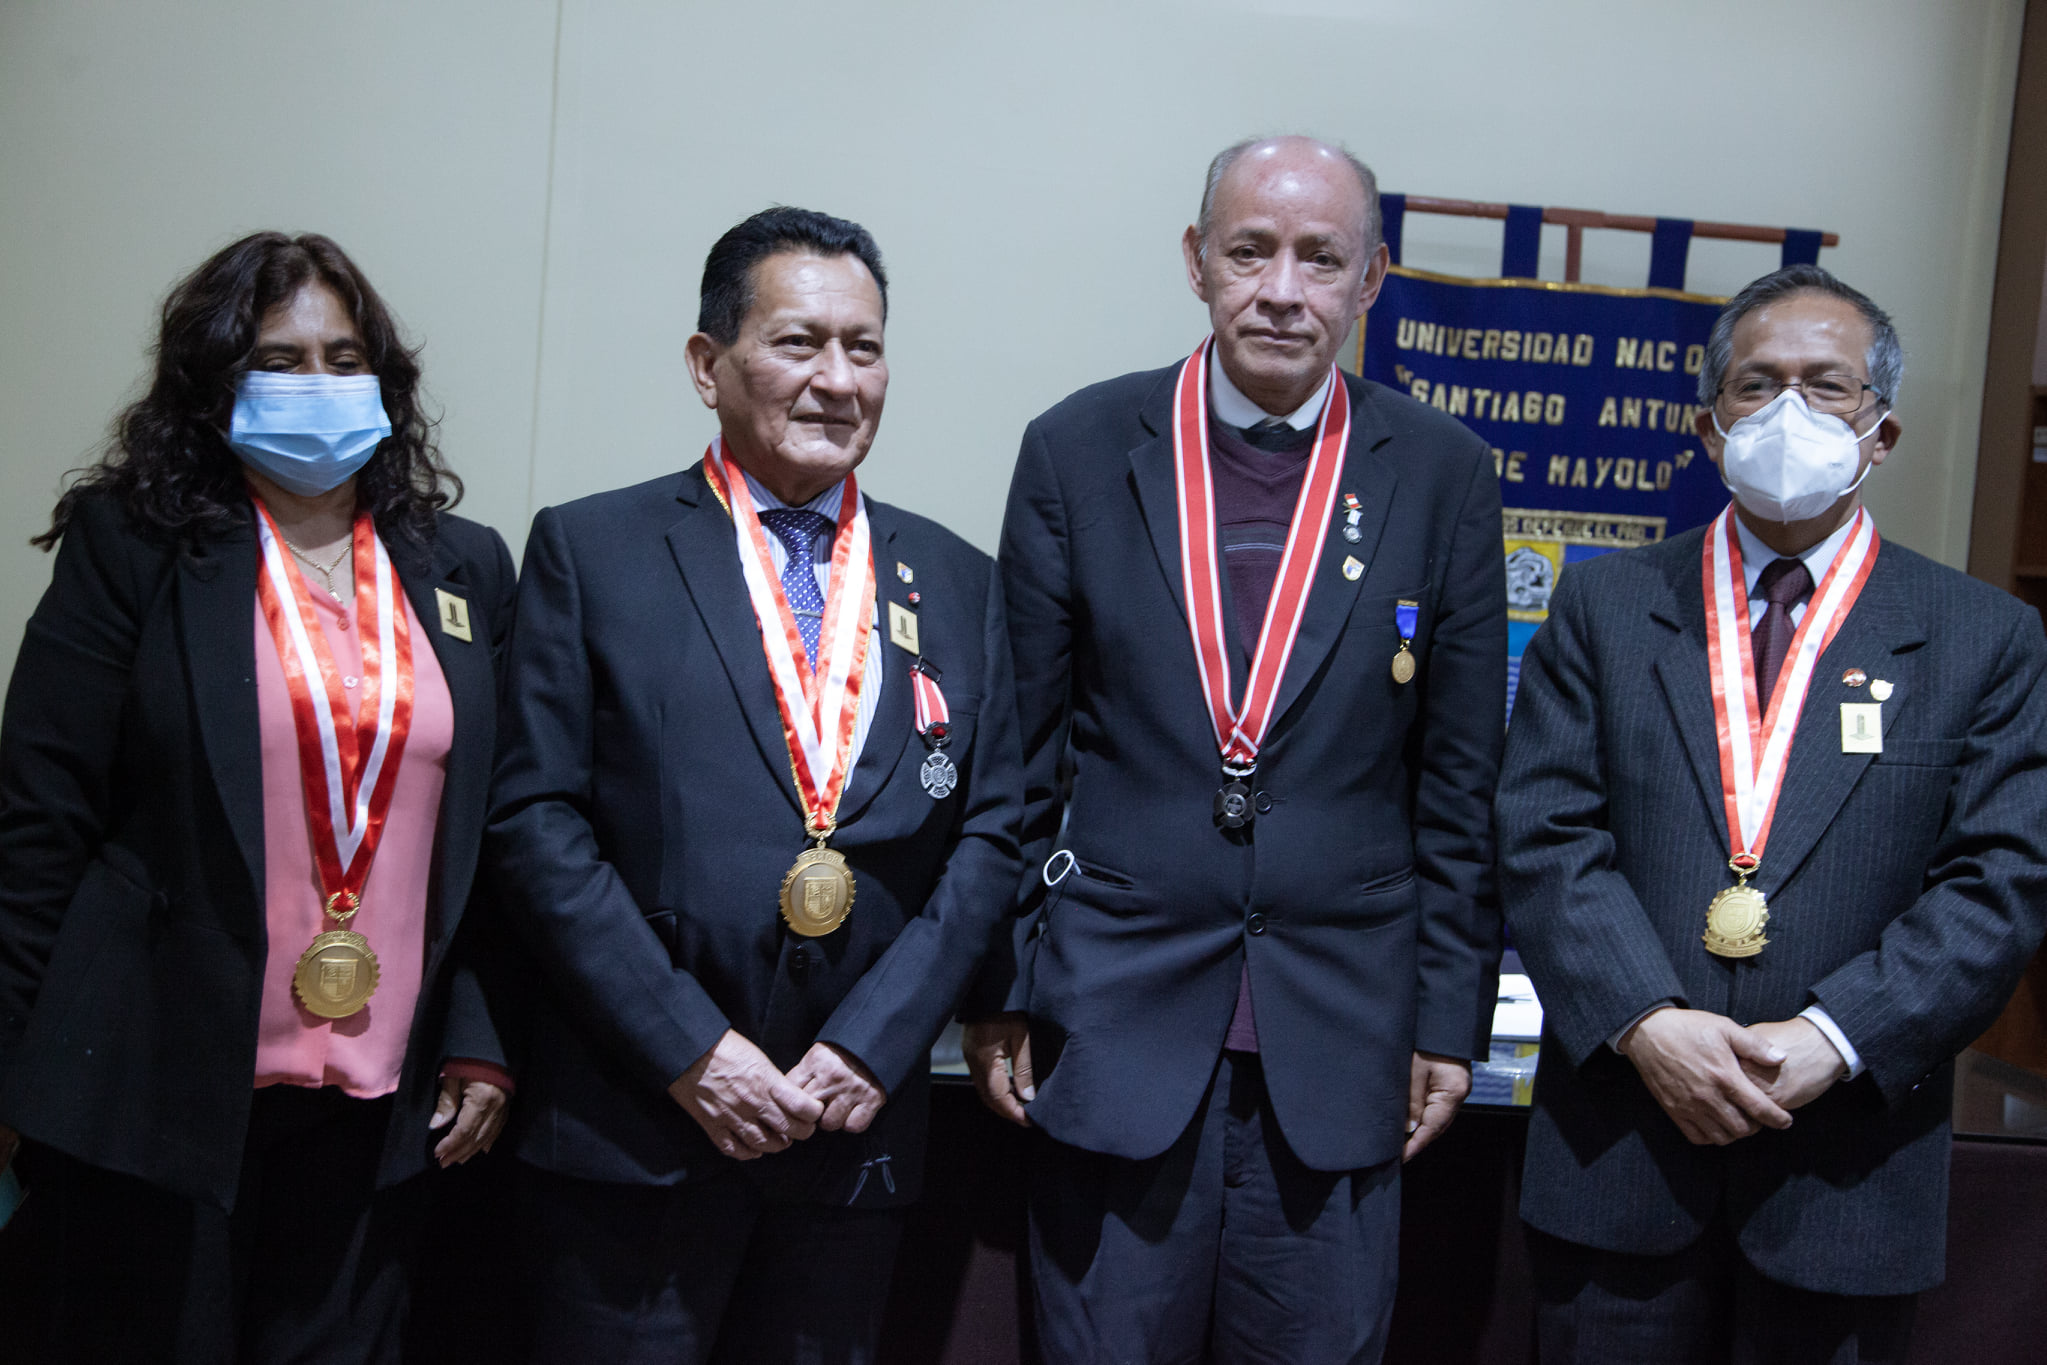  													Autoridades de la UNASAM Reciben visita de la Benemérita Sociedad Fundadores de la Independencia del Perú
													